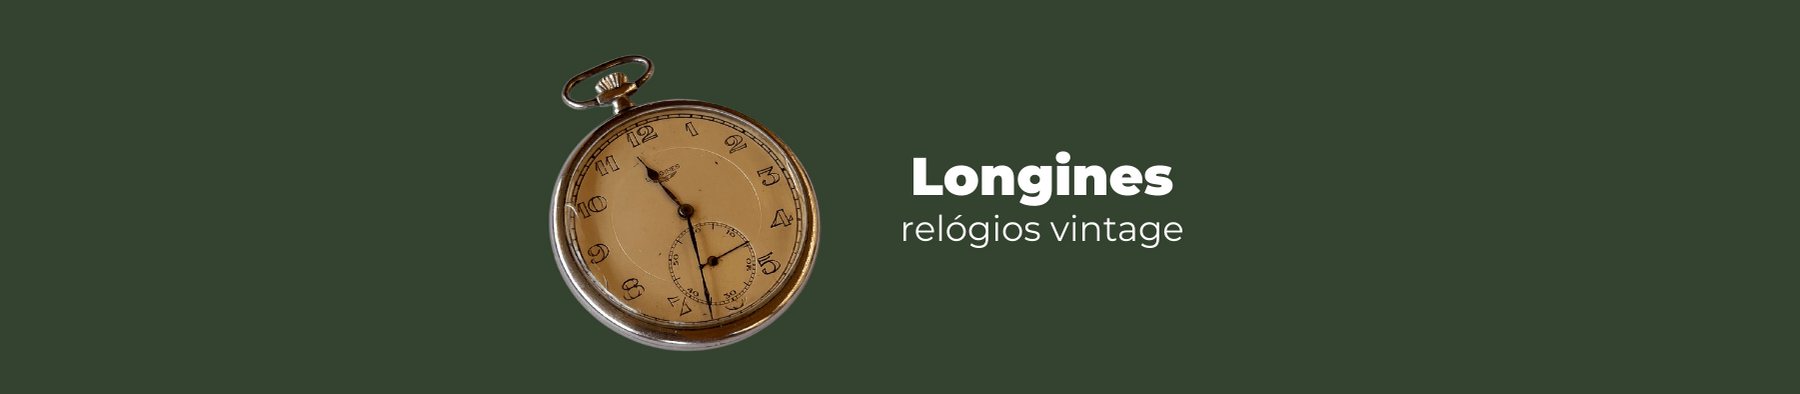 longines relógios vintage